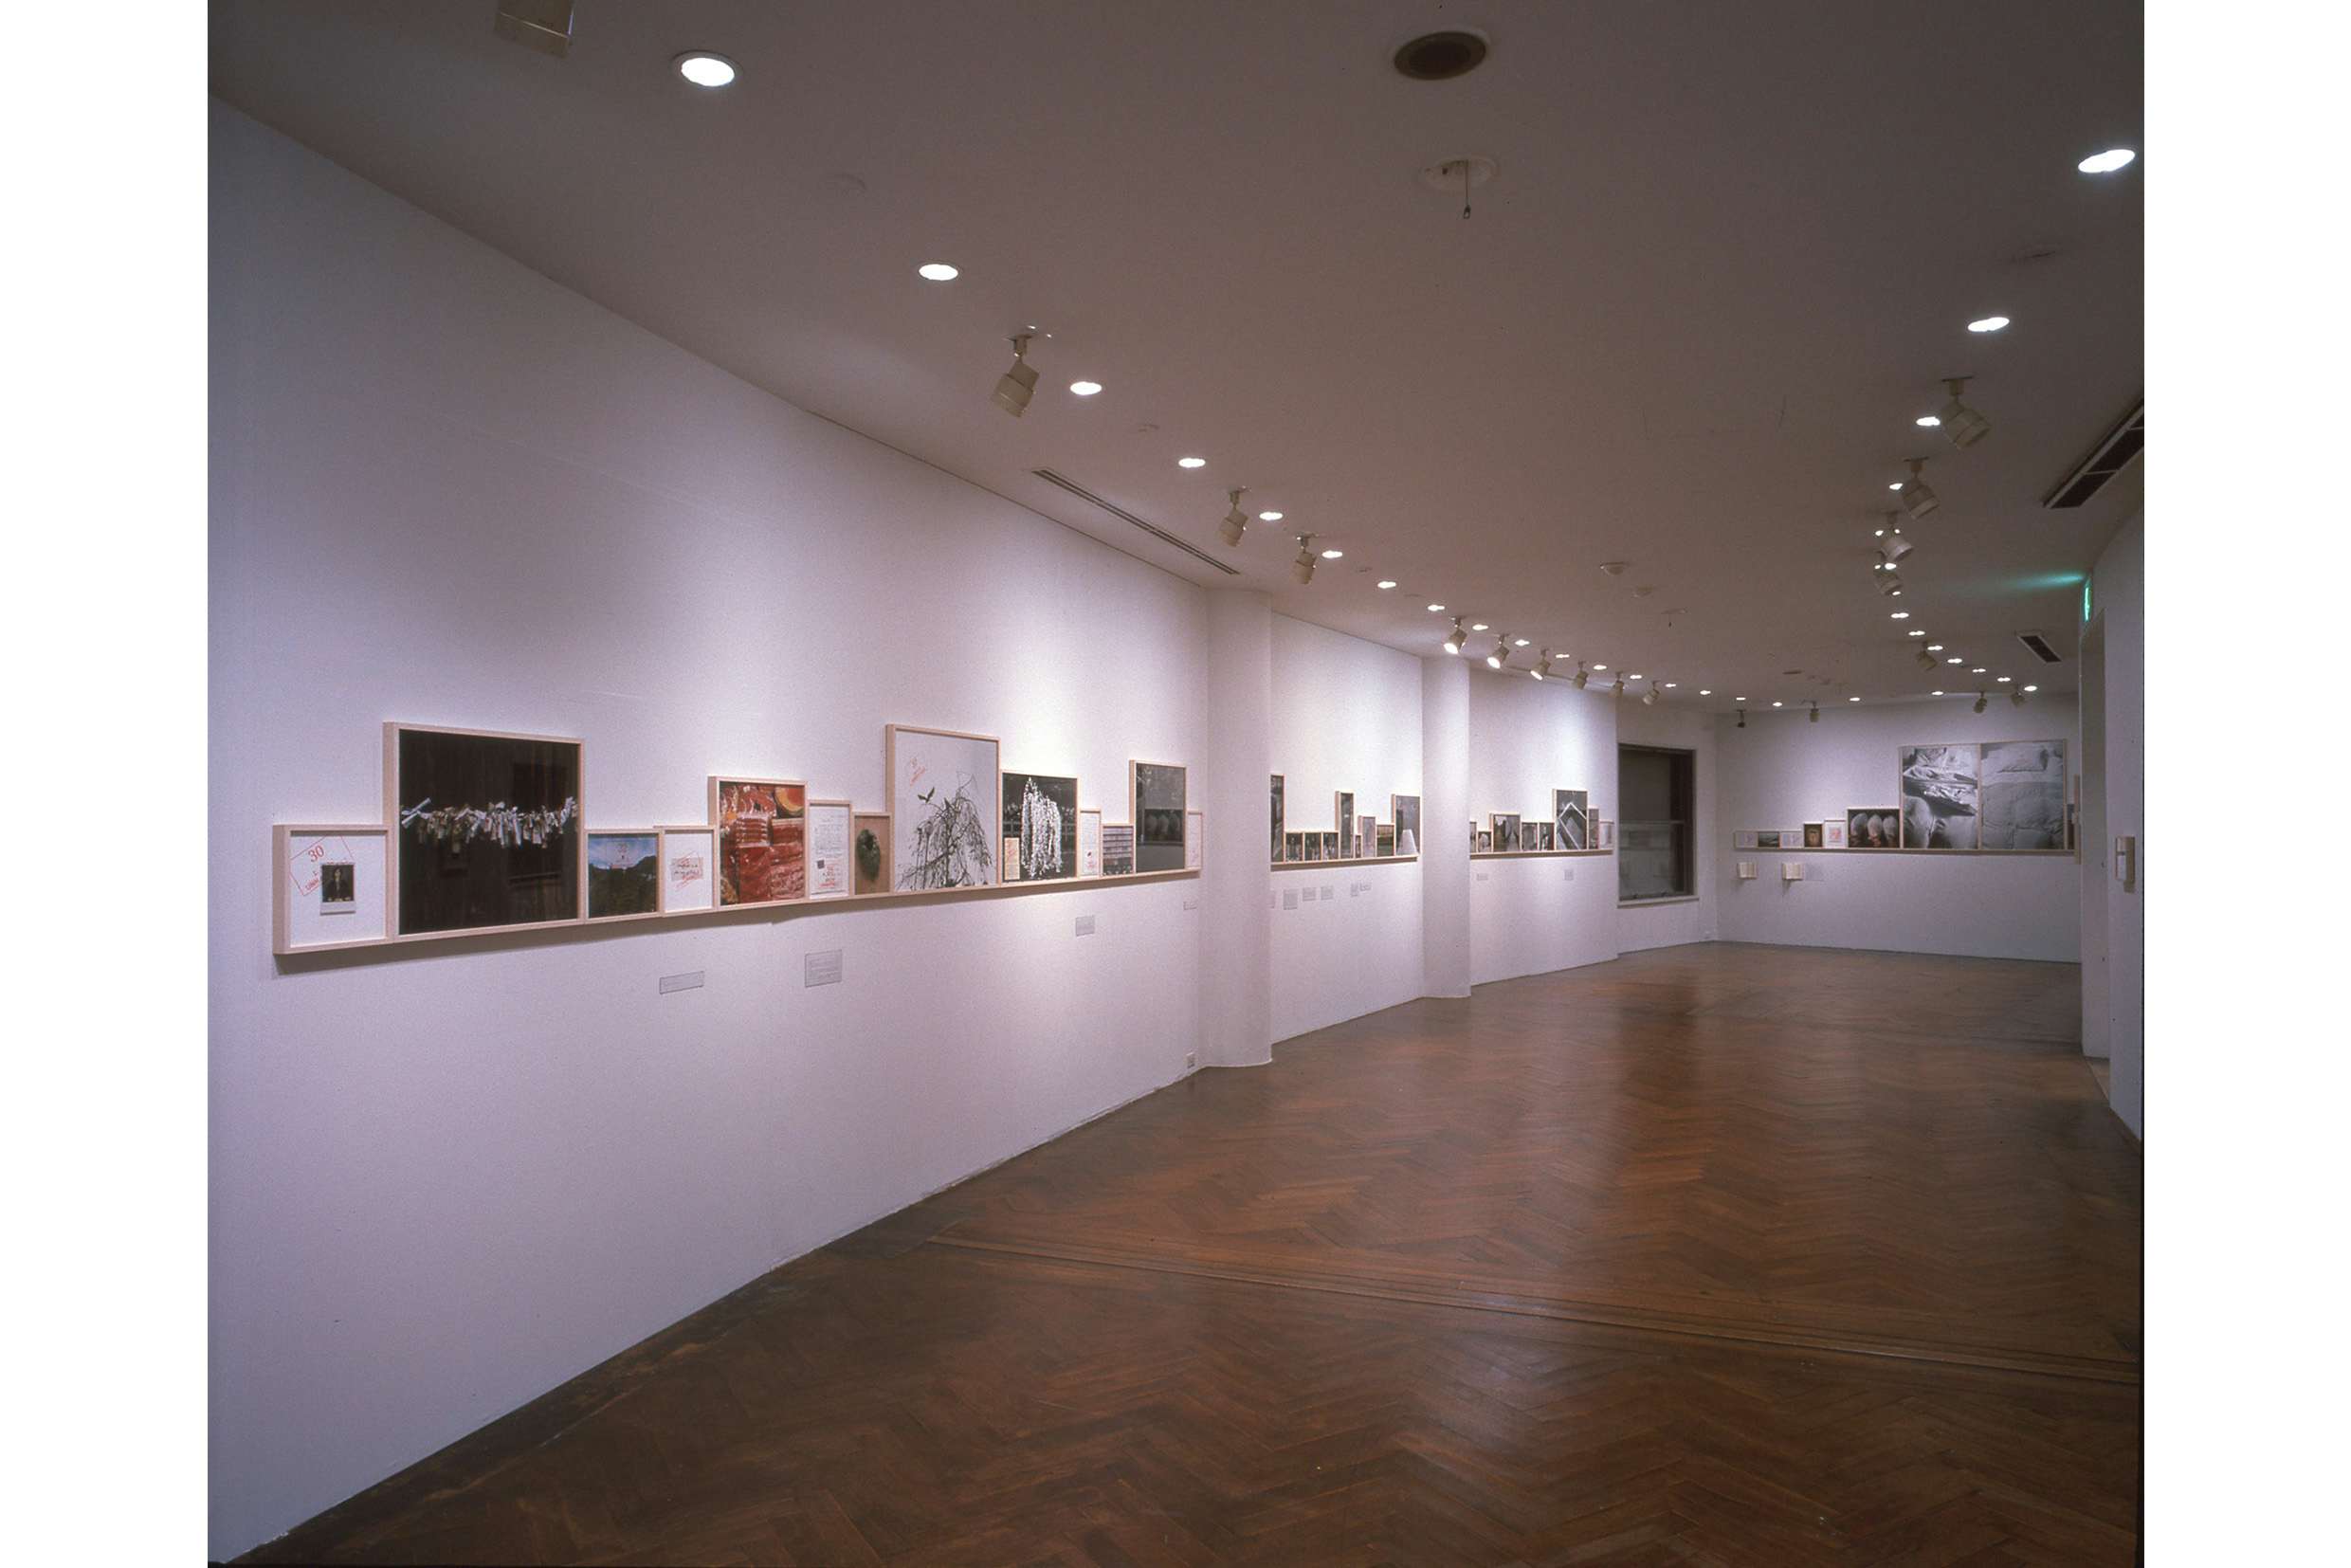 ソフィ・カルによる19年前の個展を再現。原美術館で「限局性激痛」が